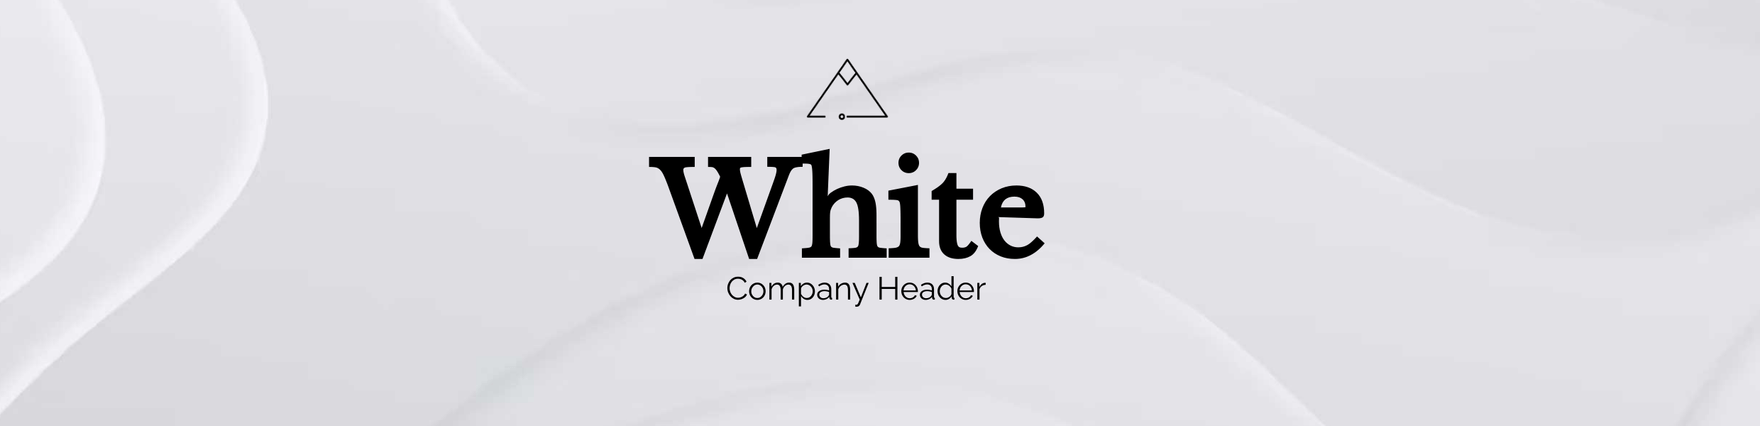 White Company Header